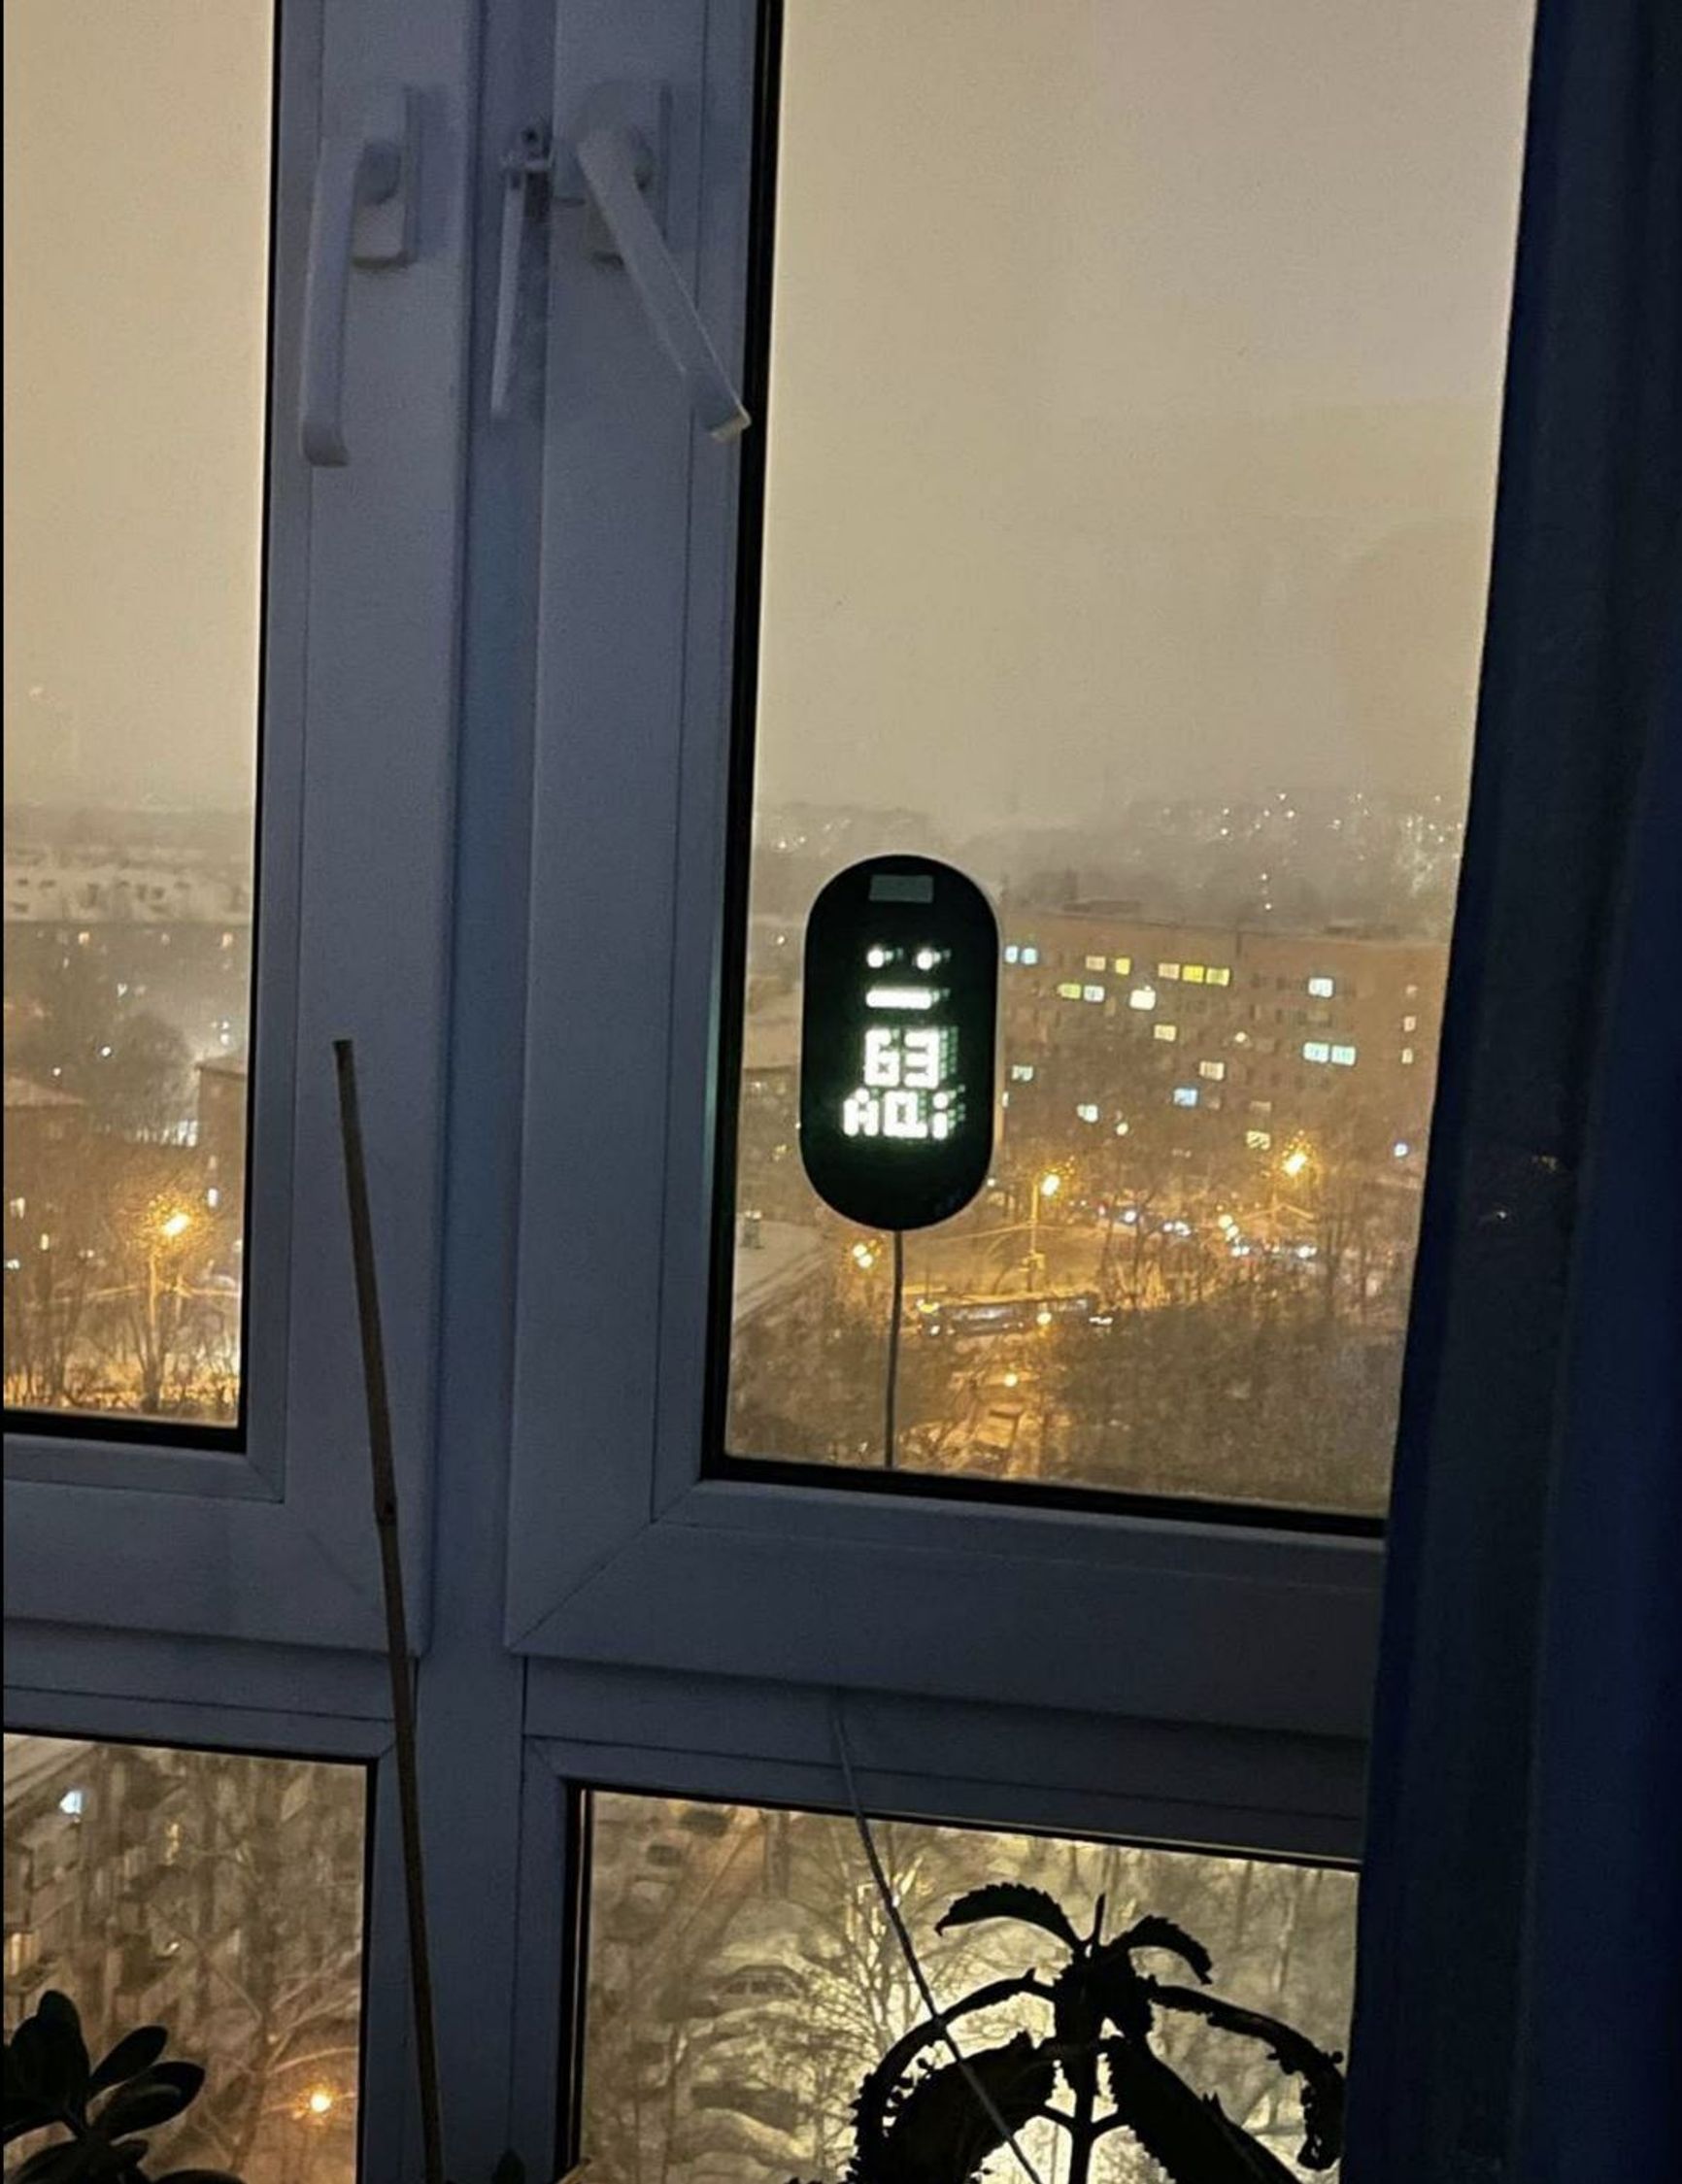 Air pollution sensor